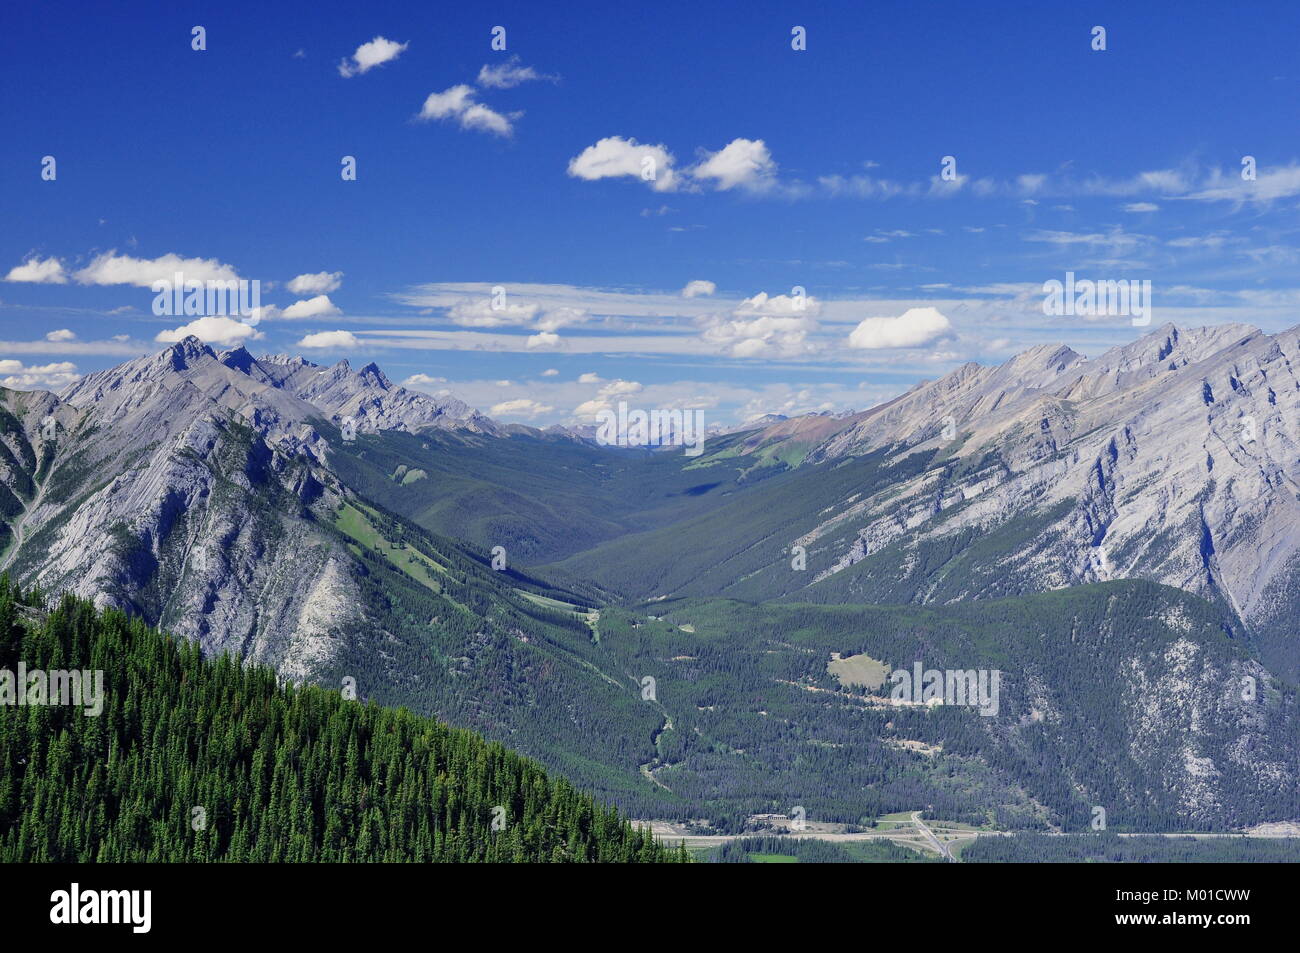 Une longue vallée vallonnés dans le parc national Banff, en Alberta, au Canada, entourée par les incroyables montagnes Rocheuses. Banque D'Images